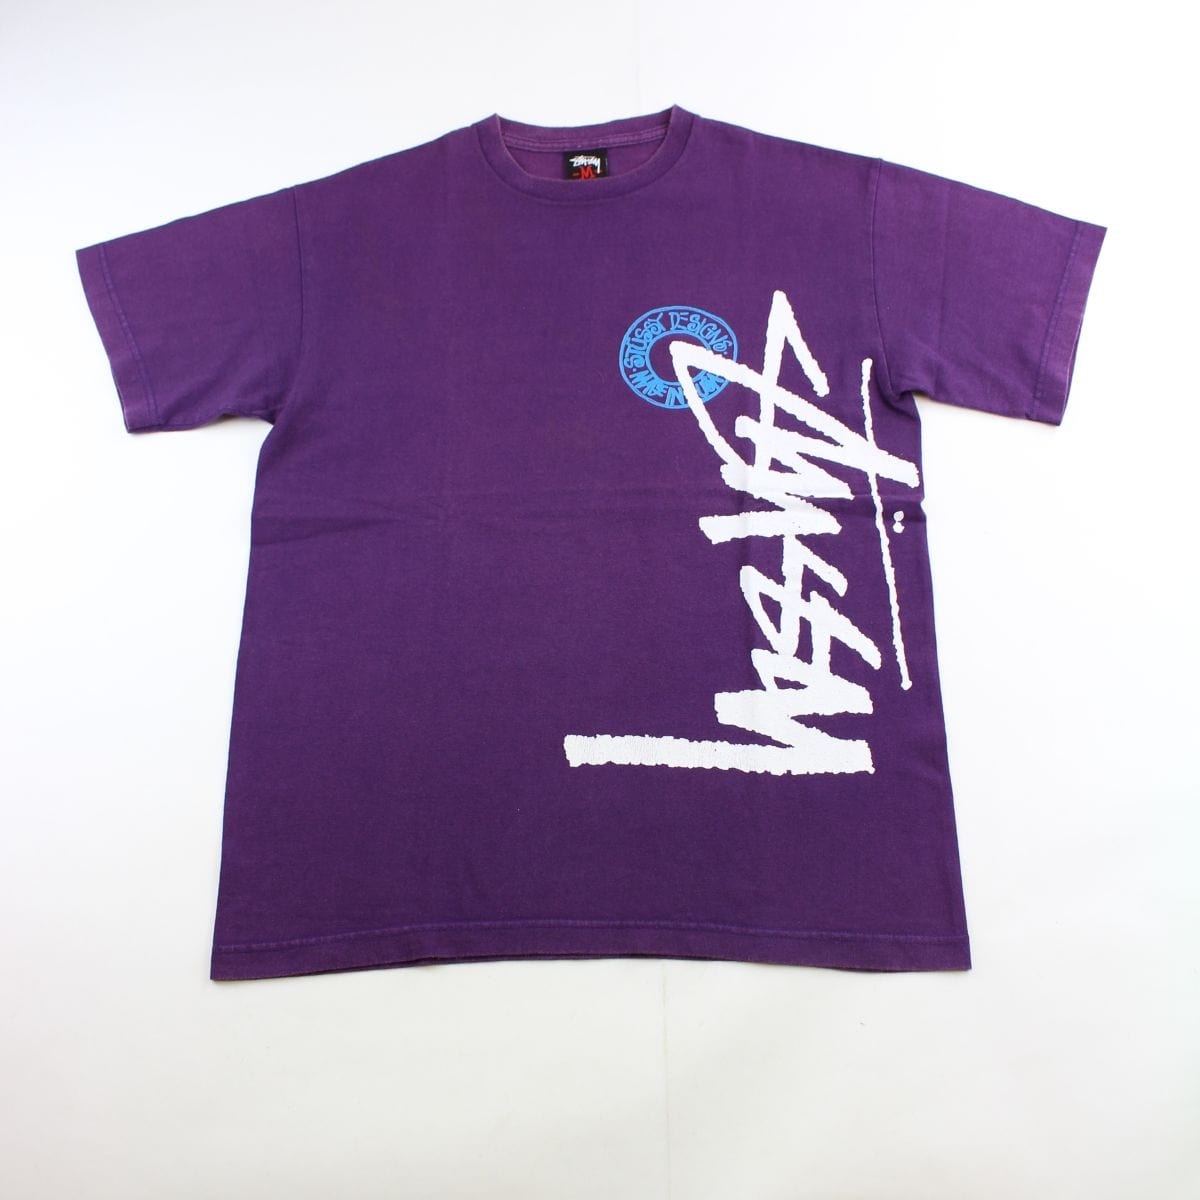 stussy side logo tee purple - SaruGeneral